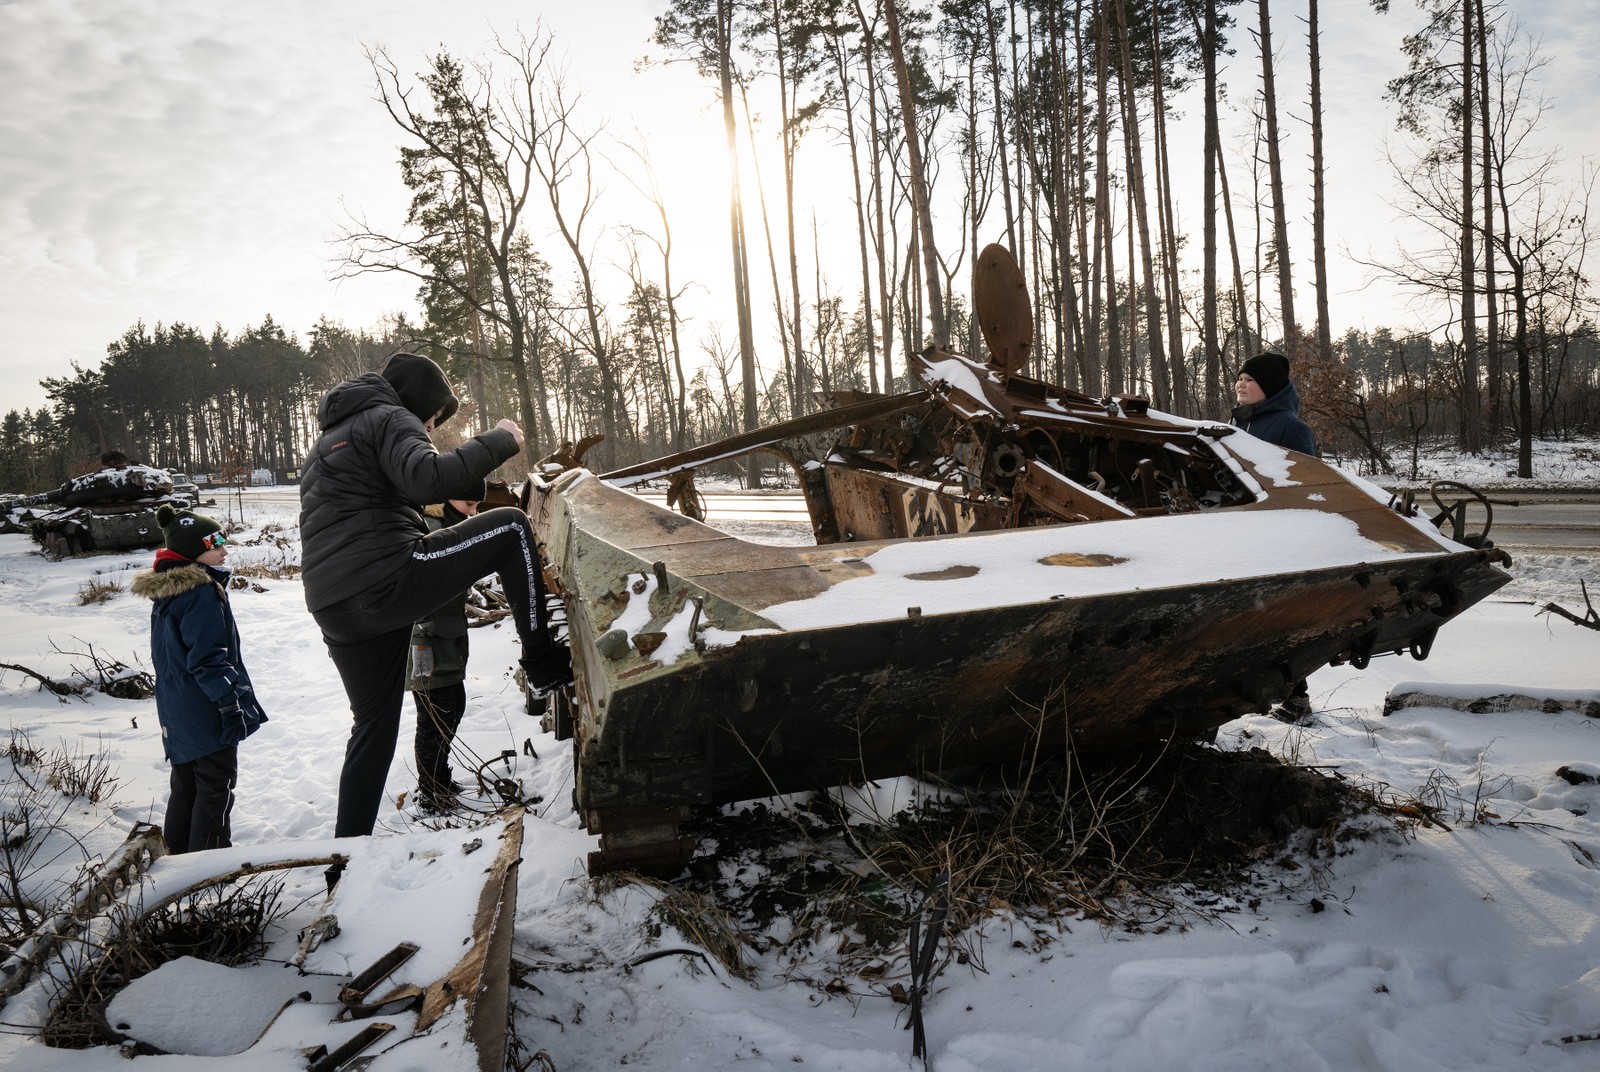 Jovens de Irpin, próximo a Soledar, chutam veículo militar russo destruído, agora coberto de neve, na Ucrânia — Foto: Lynsey Addario/The New York Times